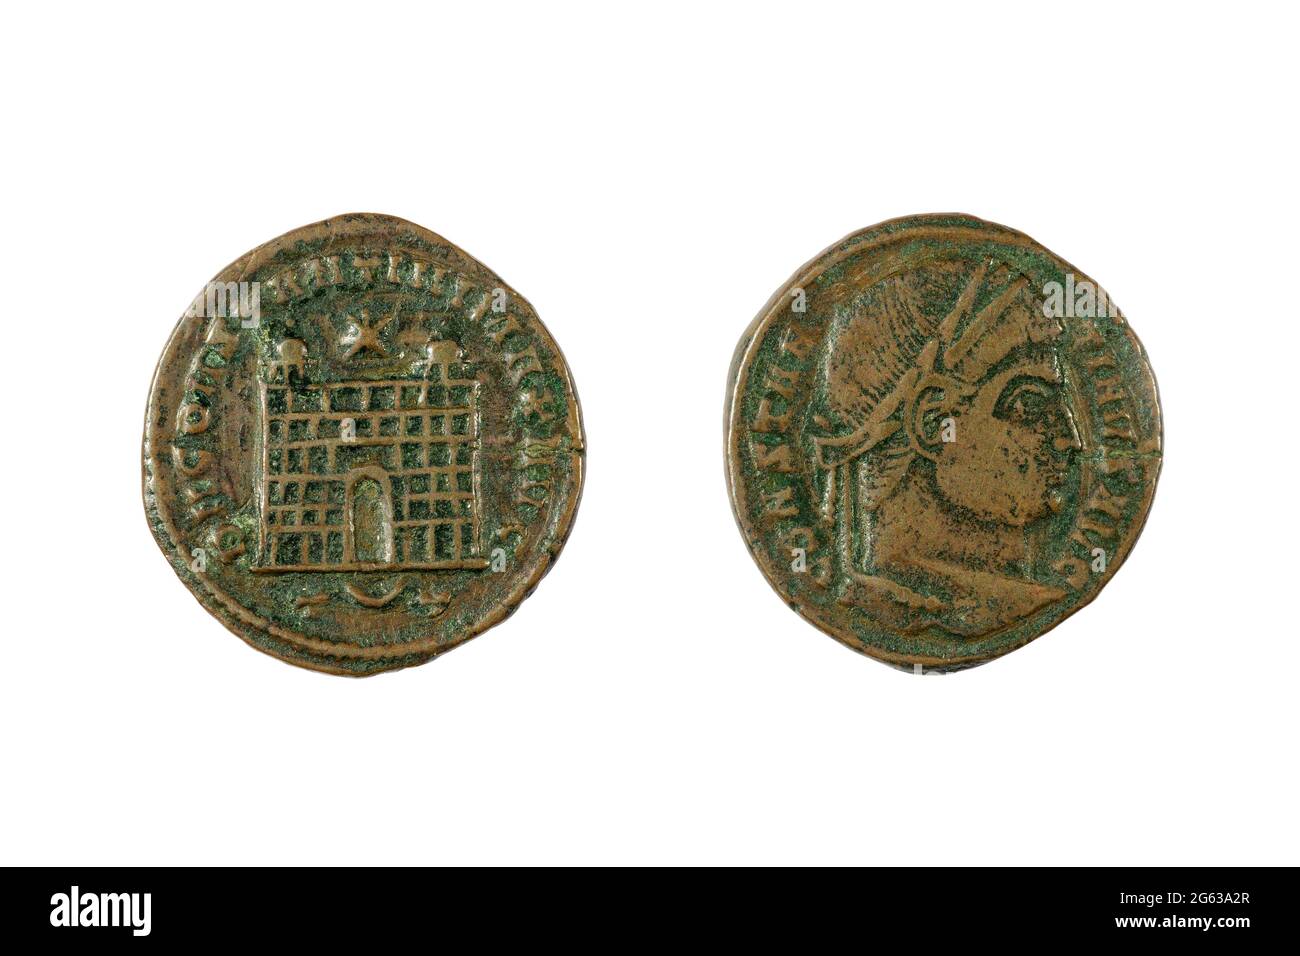 Une ancienne pièce de monnaie romaine de l'empereur Constantine I (le  grand), minée entre 307 et 337 après J.-C. L'inverse montre une 'porte de  camp', un type de fortification Photo Stock -